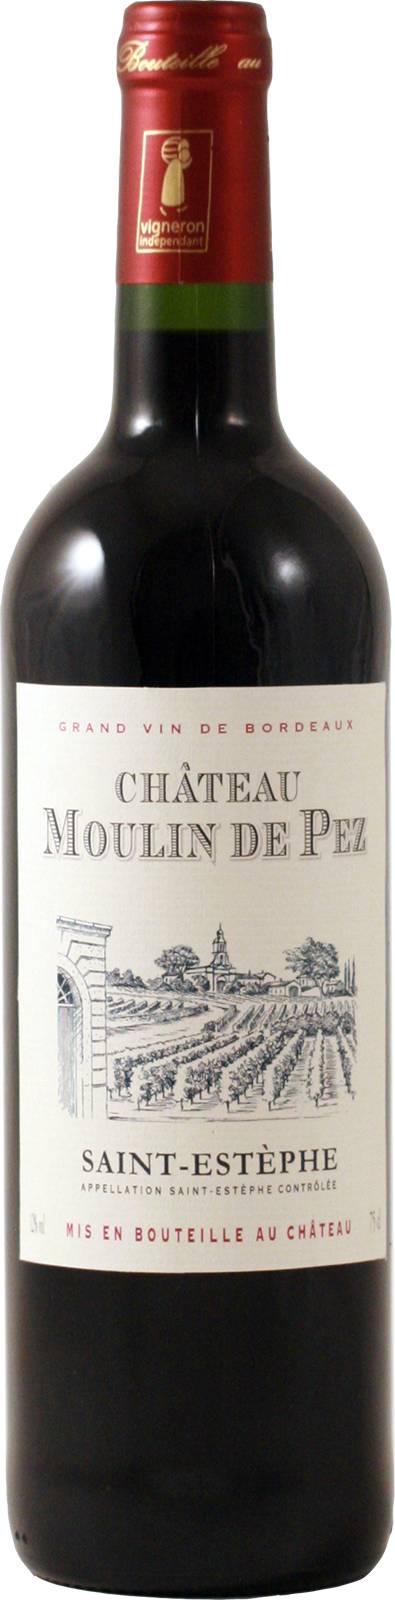 Château Moulin de Pez - Chateau moulin de pez vin rouge (750 ml)